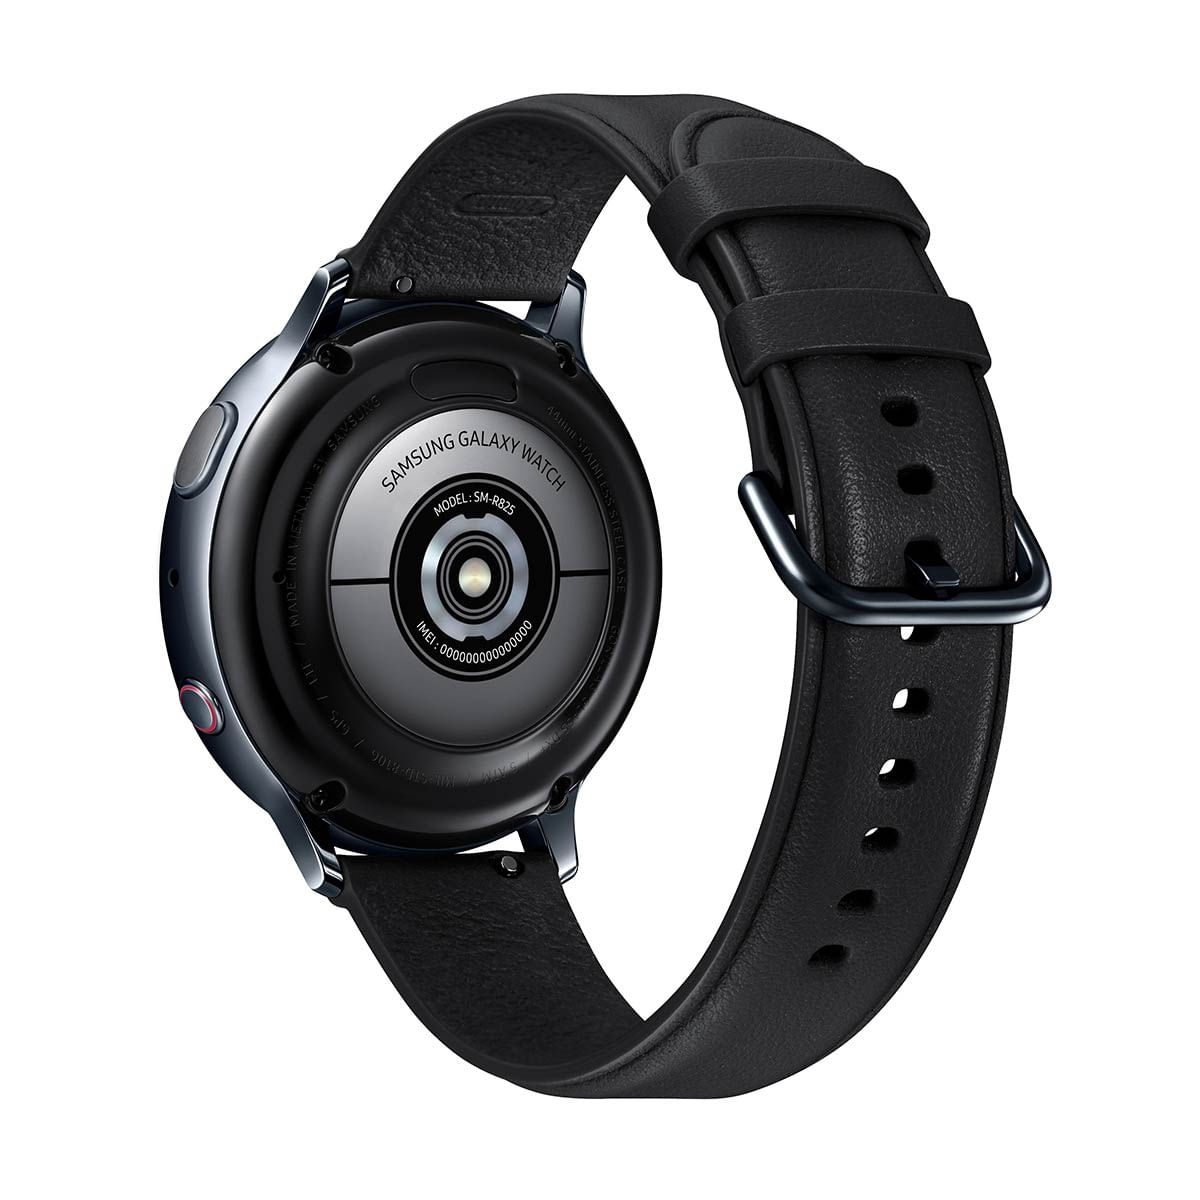 kit-smartwatch-samsung-2-pecas--galaxy-watch3-41mm-lte-bronze---galaxy-active2-lte-44mm-preto-5.jpg